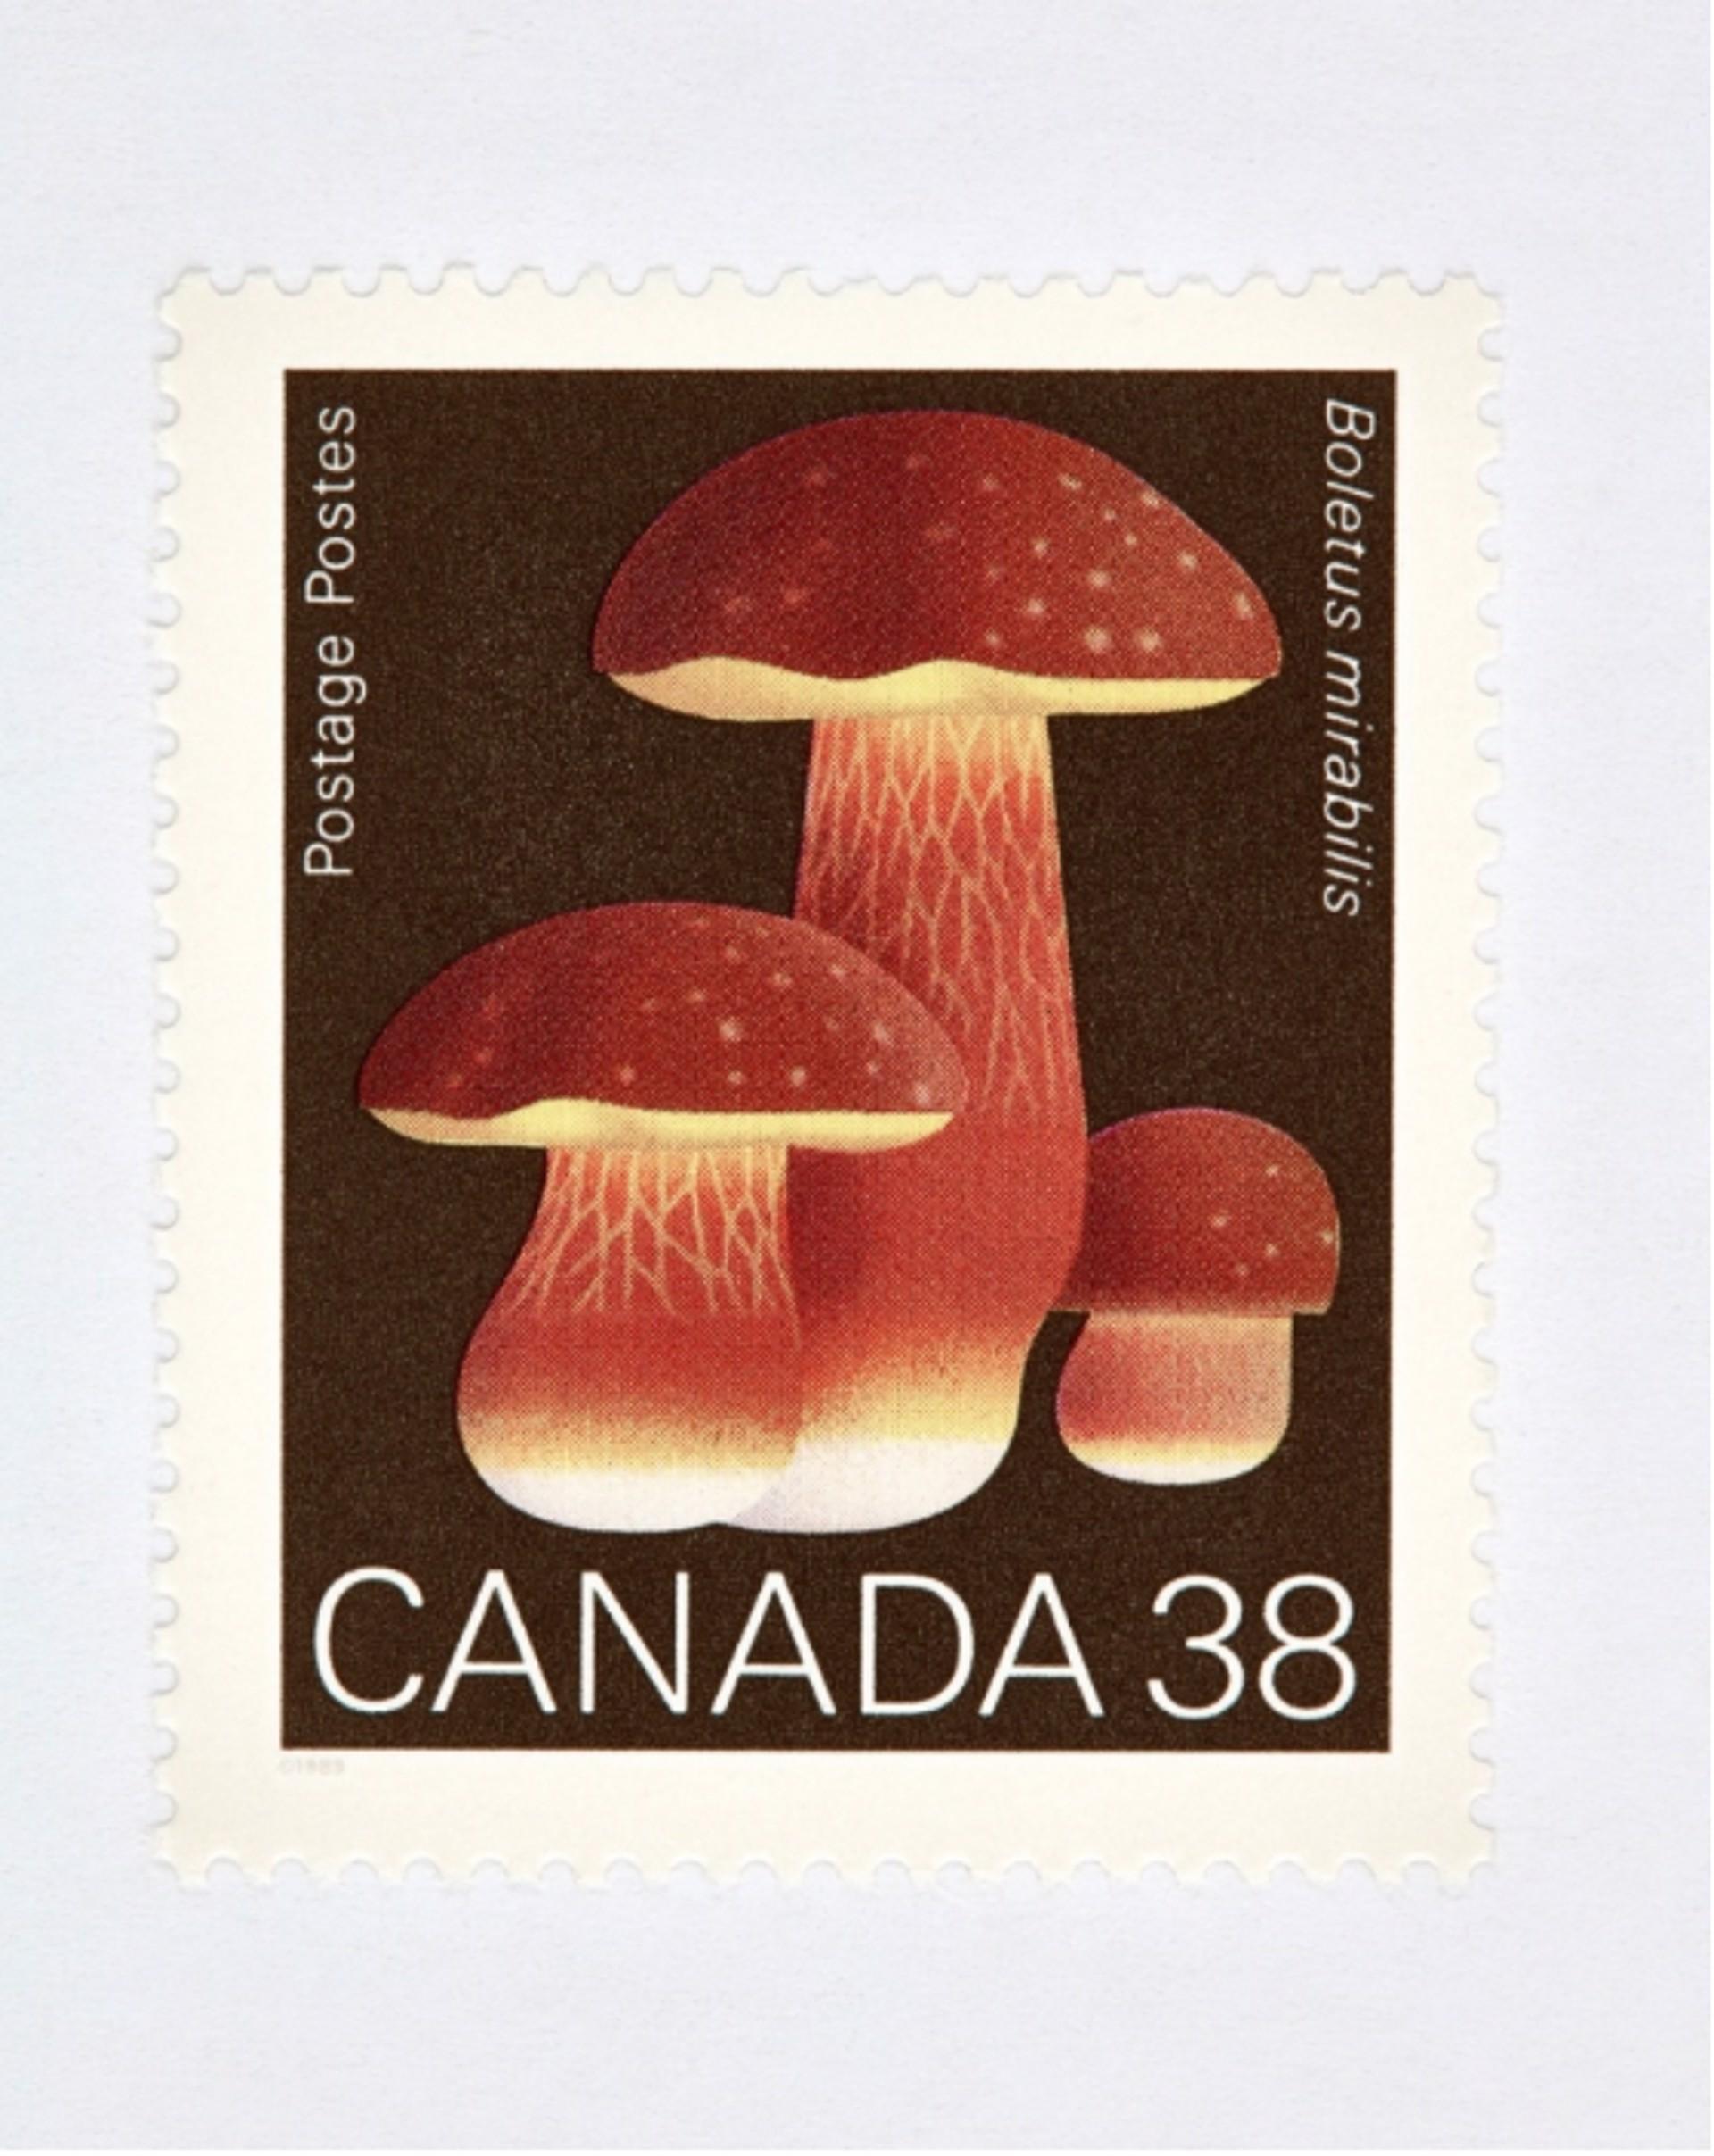 Kanada 38 Pilz (Braun)
Digitaler C-Print / Archivpigmentdruck
Auflage von 20 Stück pro Größe
Verfügbare Größen:
36 x 27

Die Serie "Collectible" beschäftigt sich auf Makroebene mit Münzen, Banknoten und Briefmarken. Diese Bilder werden mit der